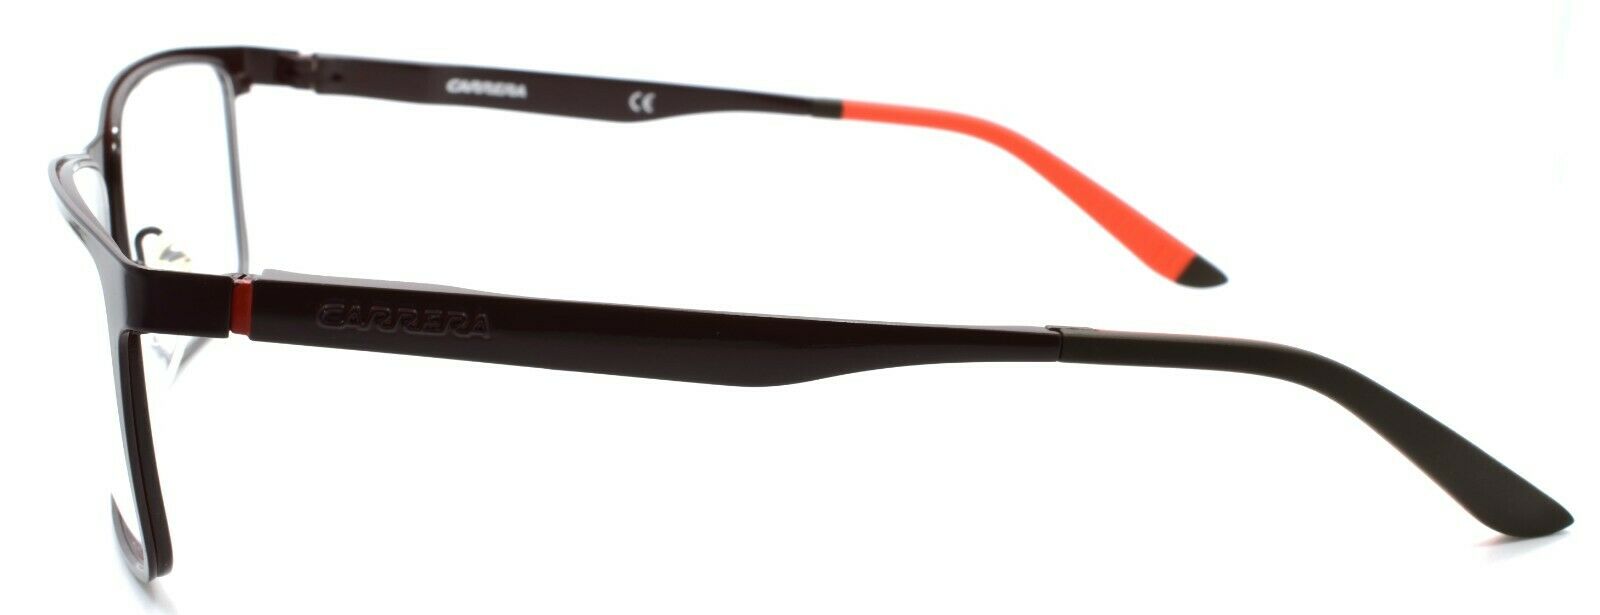 3-Carrera CA8811 FIR Men's Eyeglasses Frames 55-17-140 Semi-matte Brown-762753142115-IKSpecs